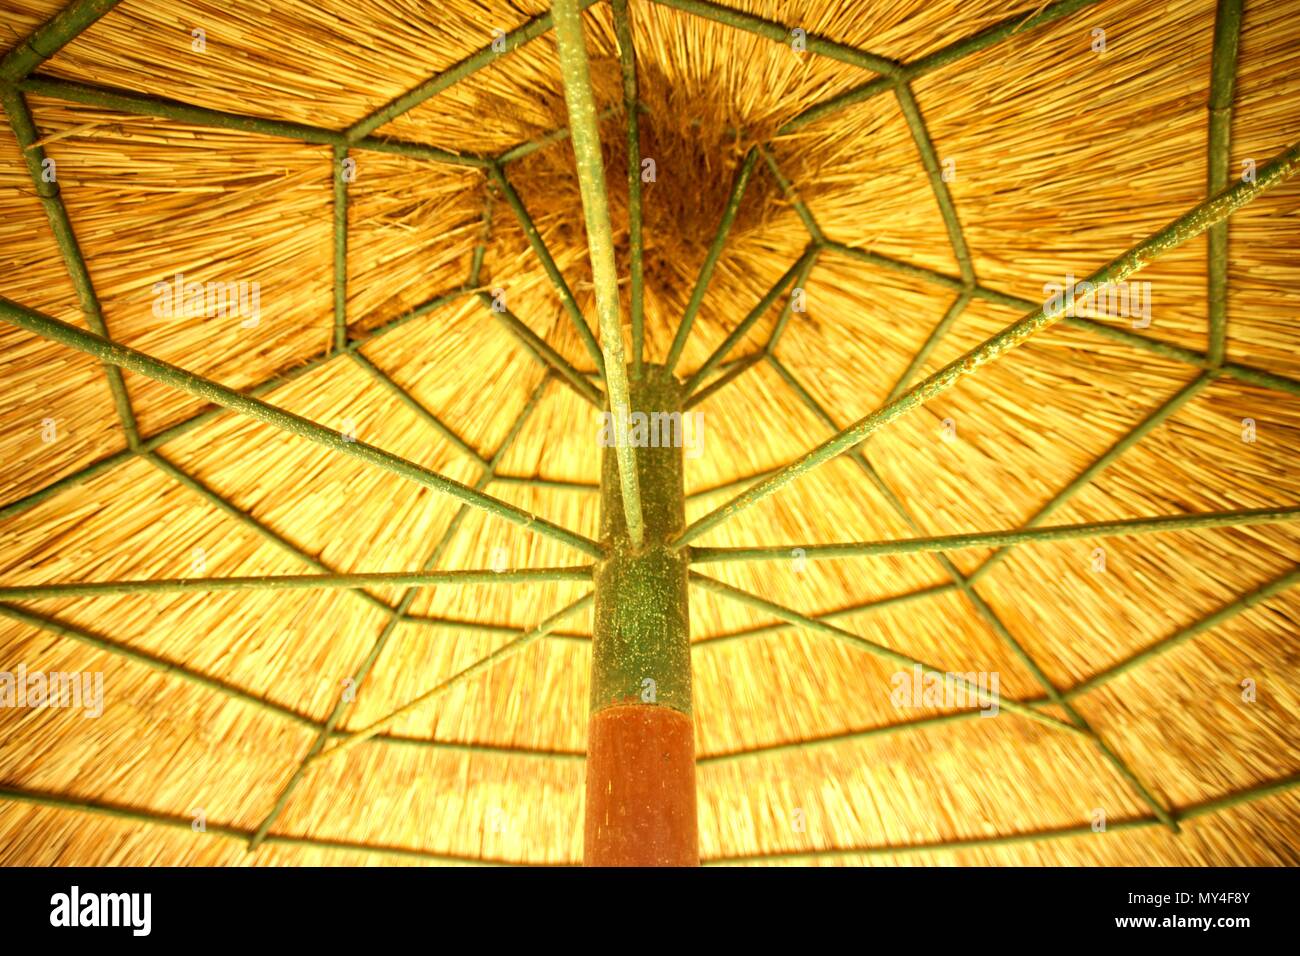 La sterpaglia ombrellone in legno Foto Stock